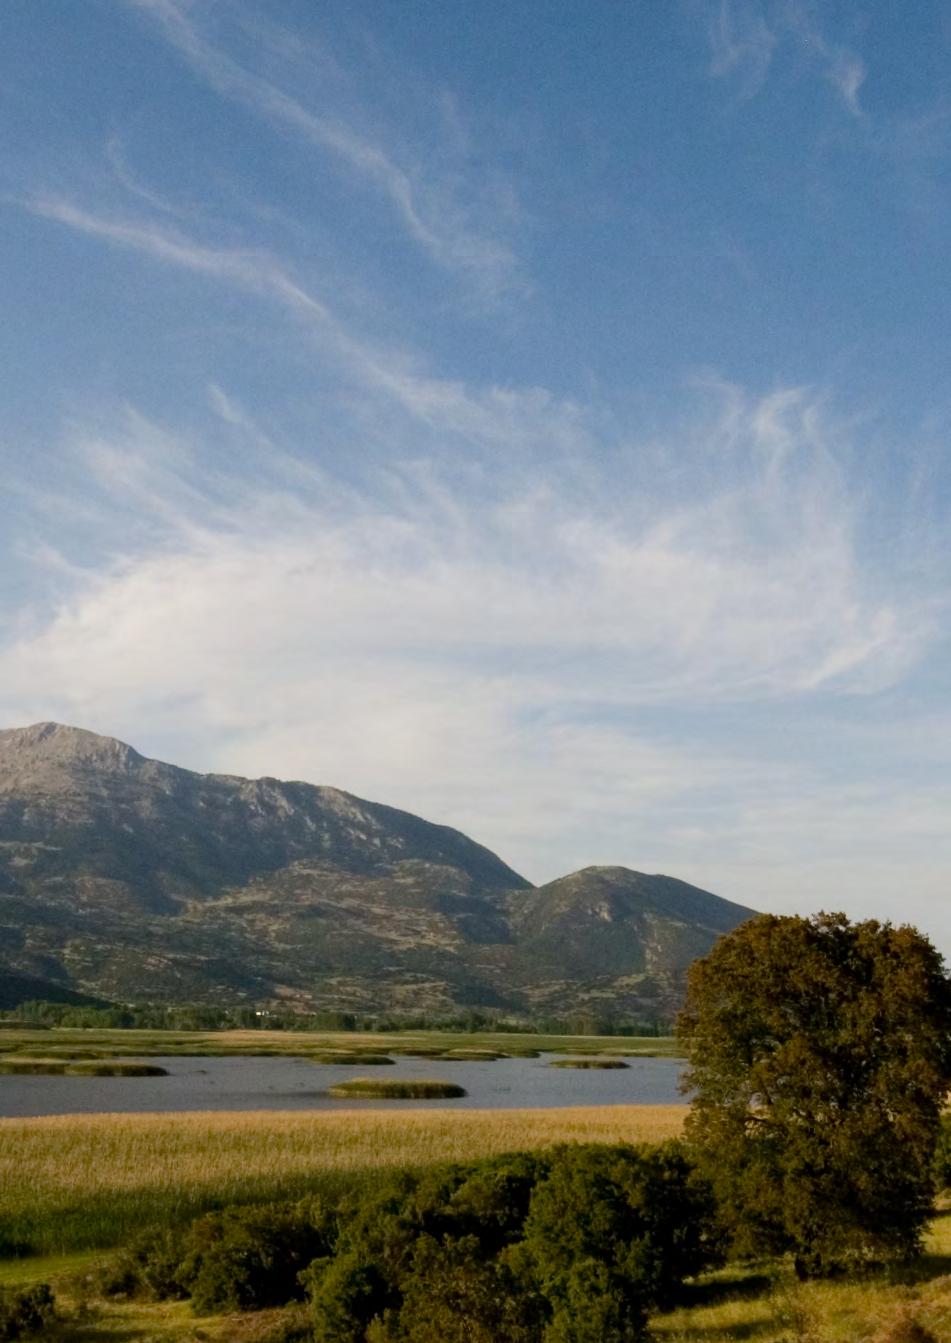 Το πρόγραμμα LIFE-Stymfalia Η λίμνη Στυμφαλία βρίσκεται στην ορεινή Κορινθία, εκεί όπου, σύμφωνα με τη μυθολογία, ο Ηρακλής αντιμετώπισε τις Στυμφαλίδες όρνιθες.